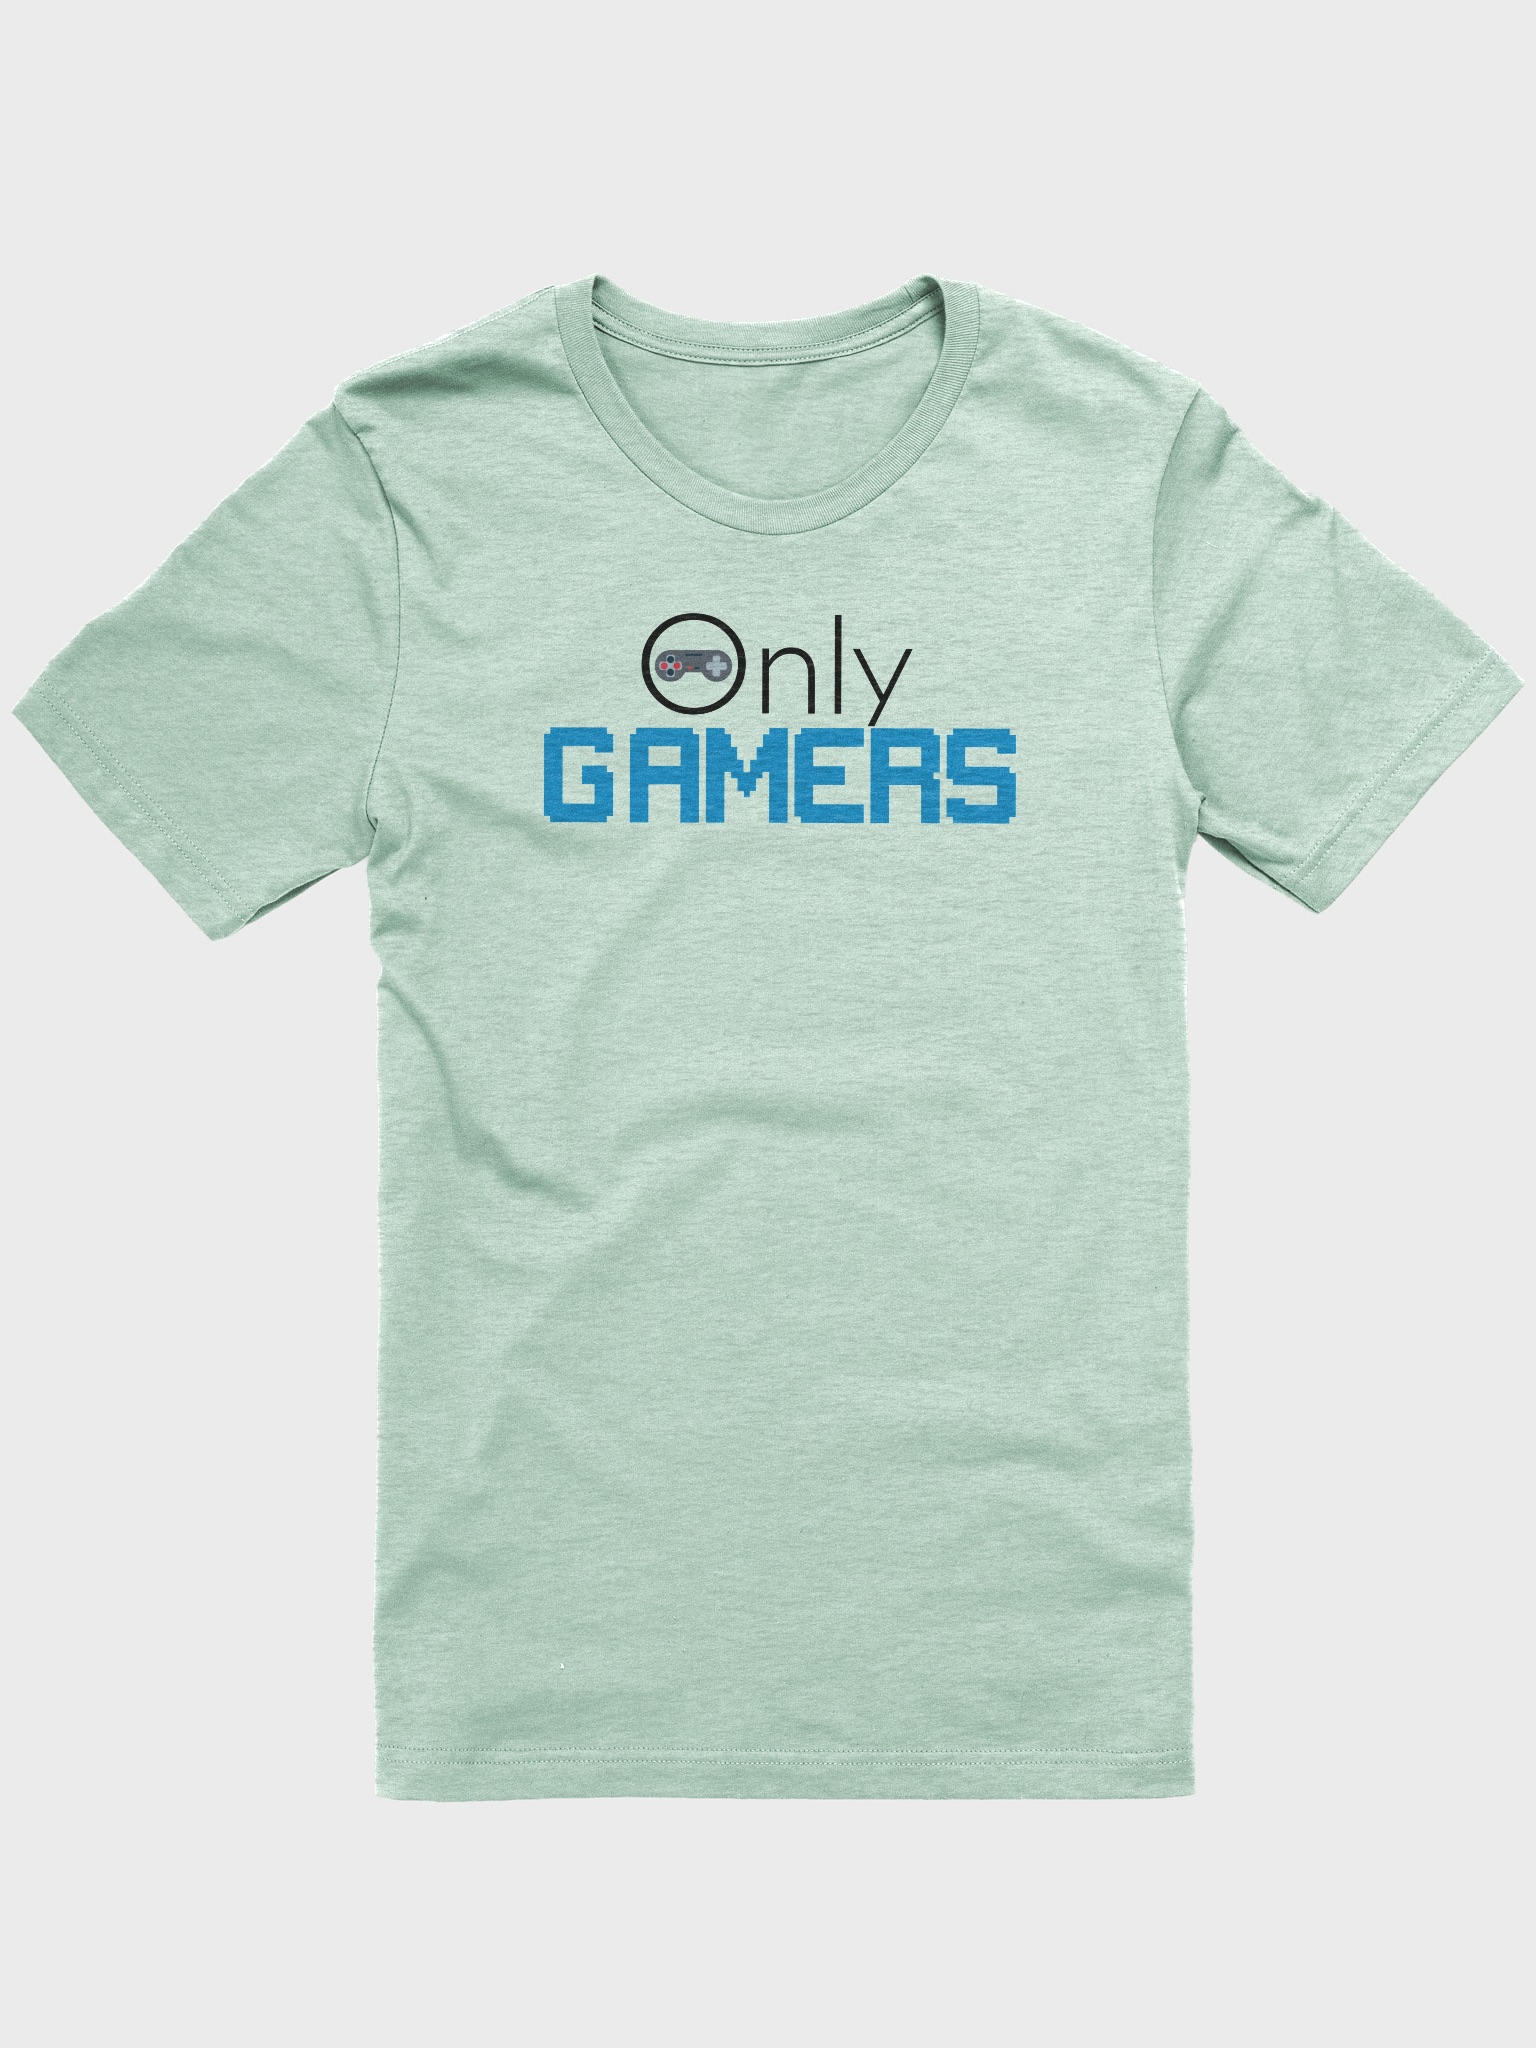 Gamers Gear Matty Mustache T-Shirt